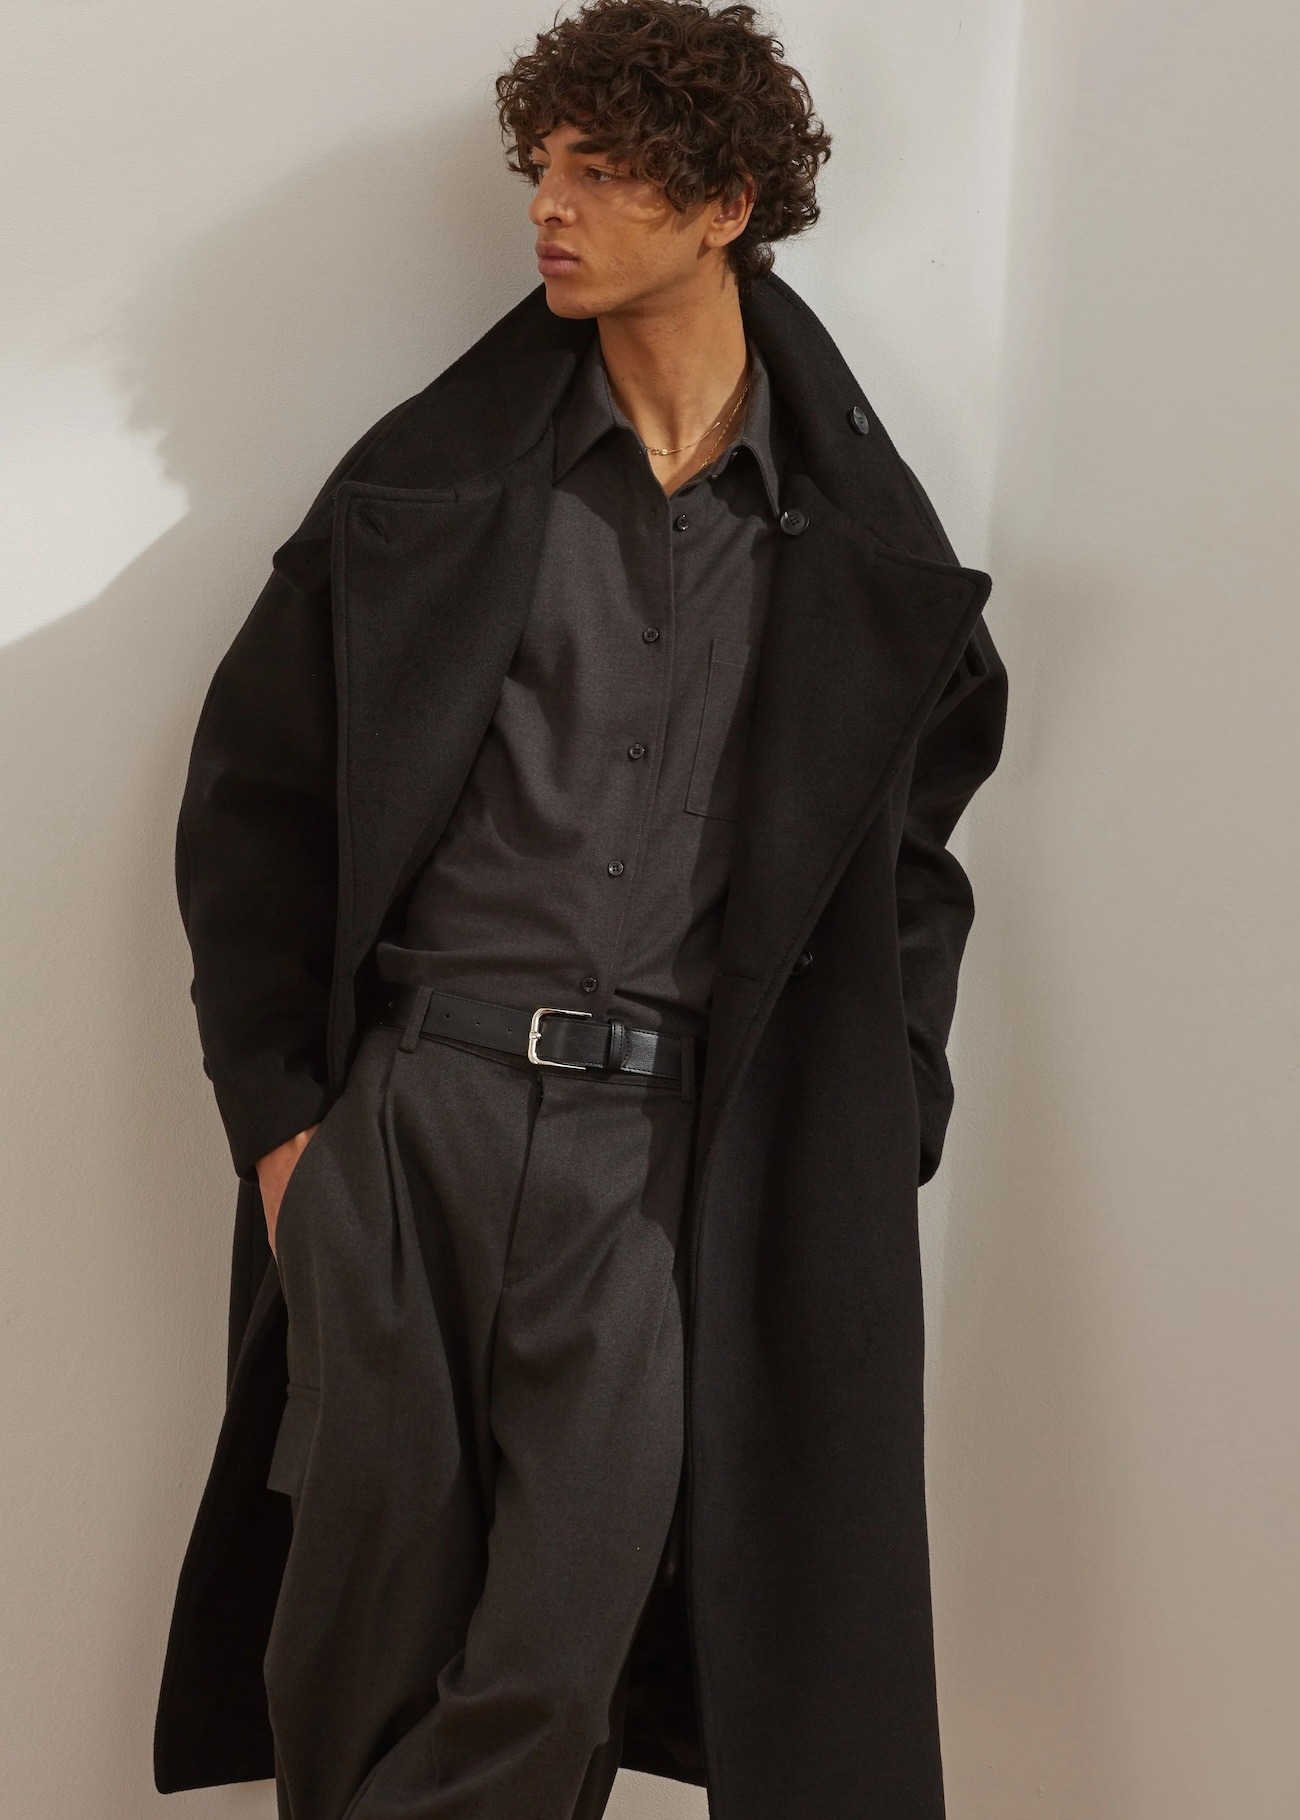 The Frankie shop marque boutique homme style minimaliste japonais coréen manteau andrea